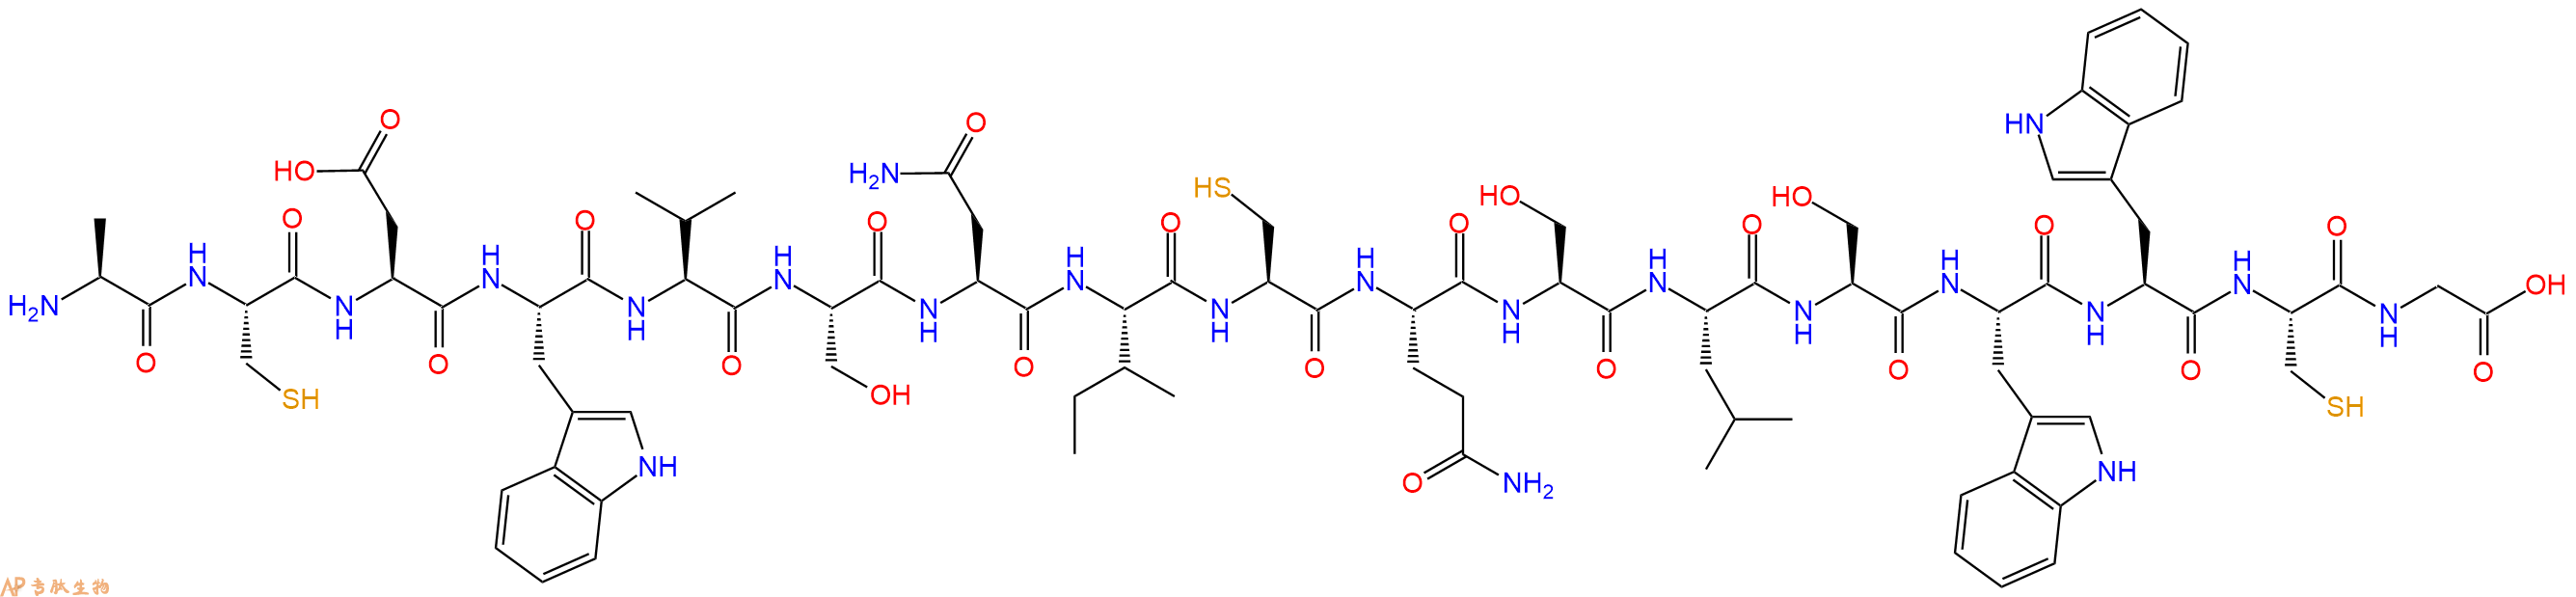 专肽生物产品H2N-Ala-Cys-Asp-Trp-Val-Ser-Asn-Ile-Cys-Gln-Ser-Leu-Ser-Trp-Trp-Cys-Gly-COOH